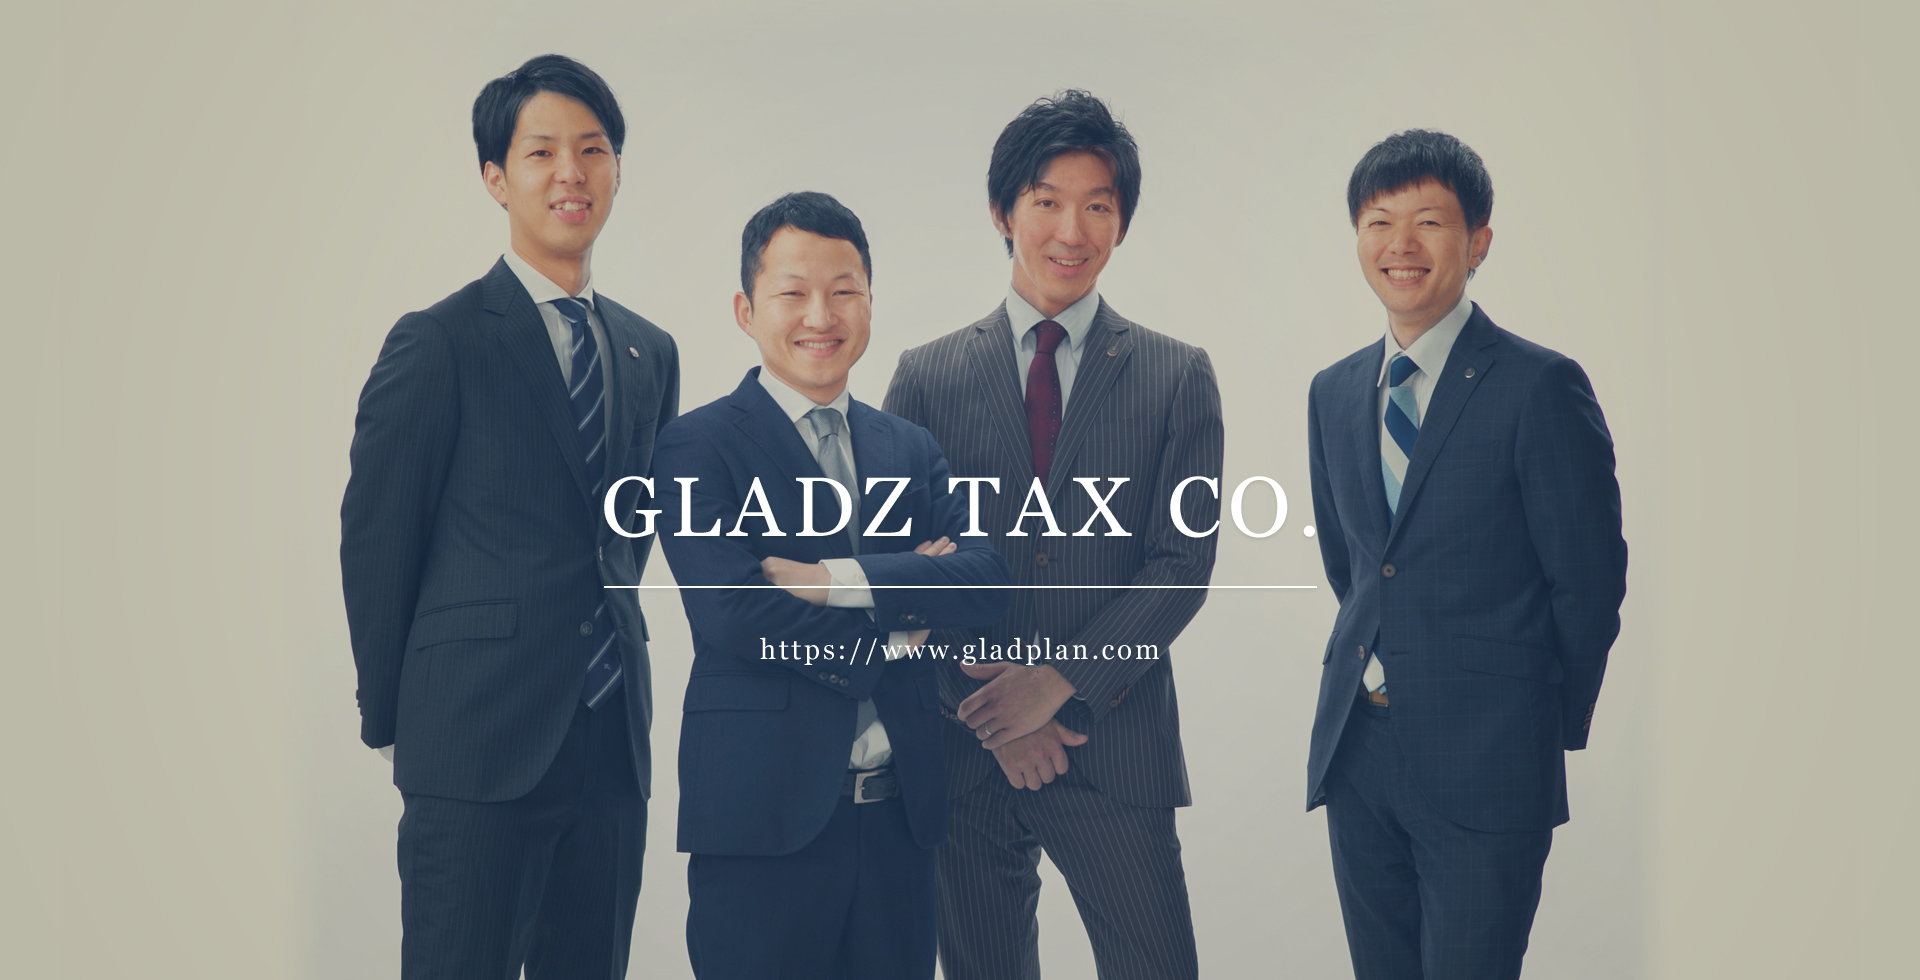 GLADZ TAX CO. https://www.gladplan.com